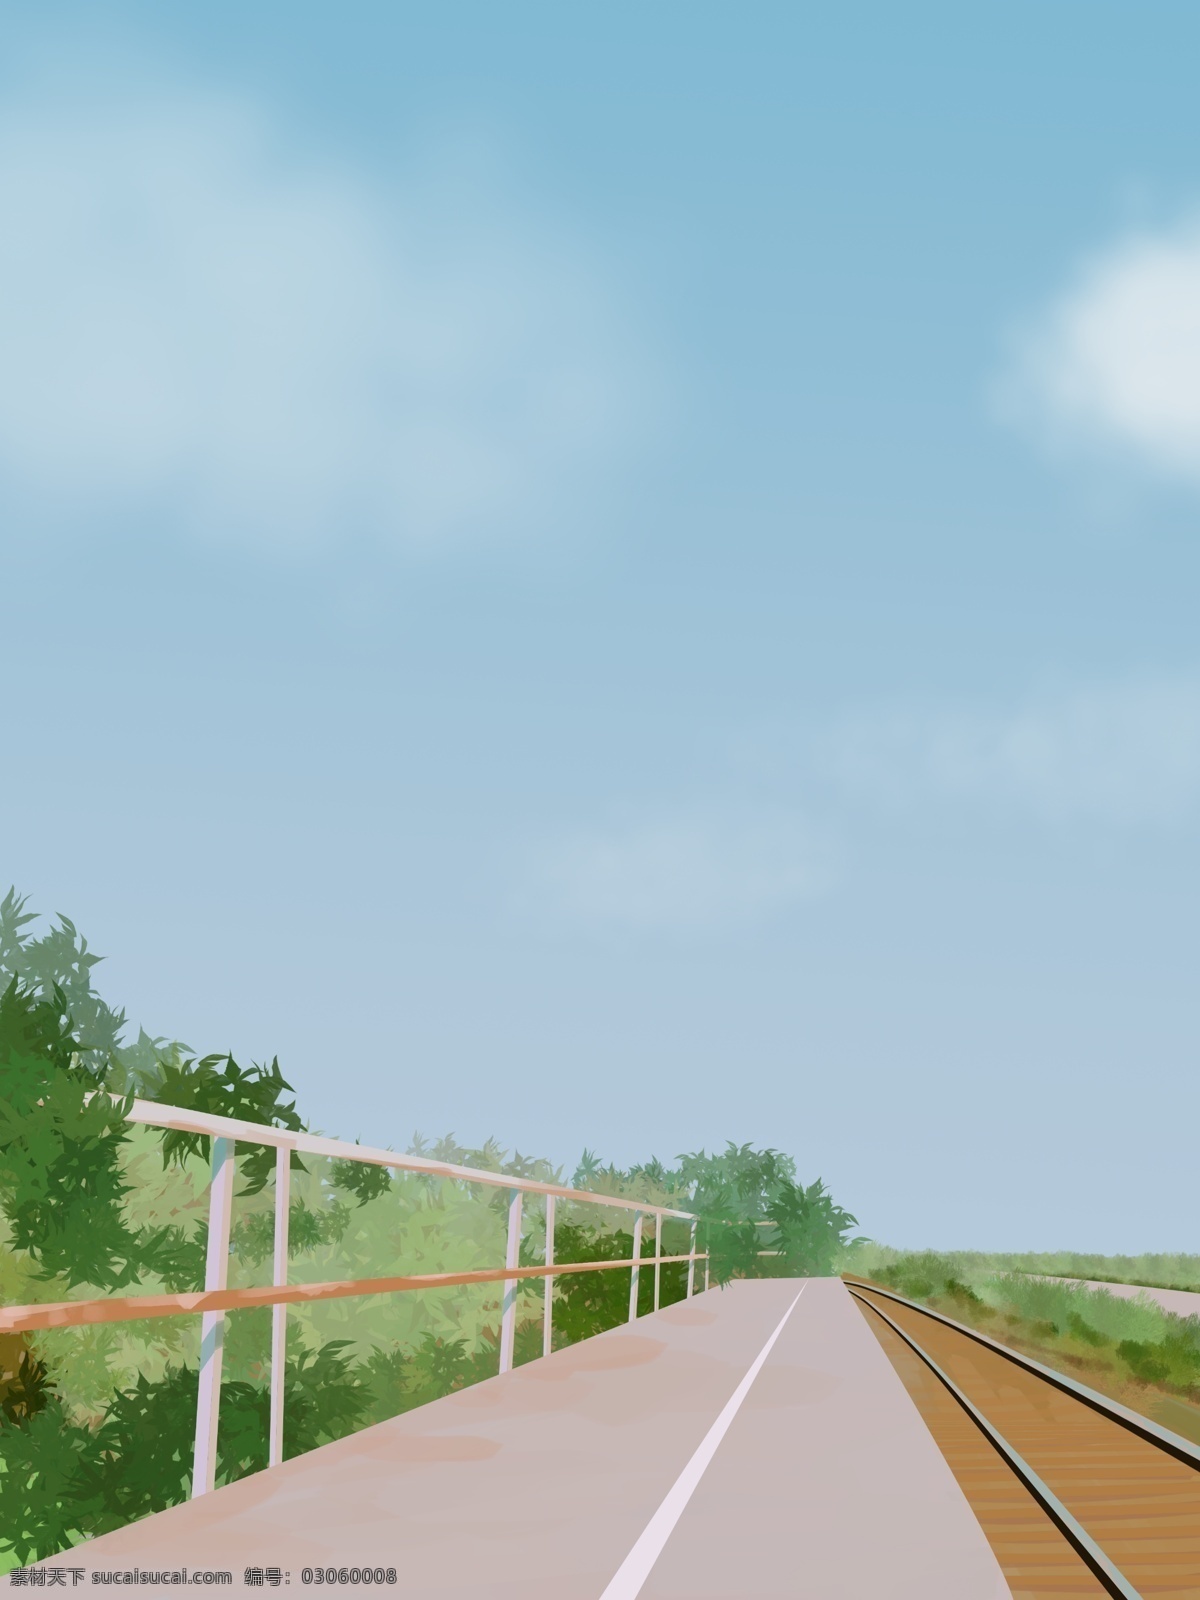 原创 插画 安静 小路 风景 场景 清新 唯美 日系 铁路 天空 朴素 创新 公路 美